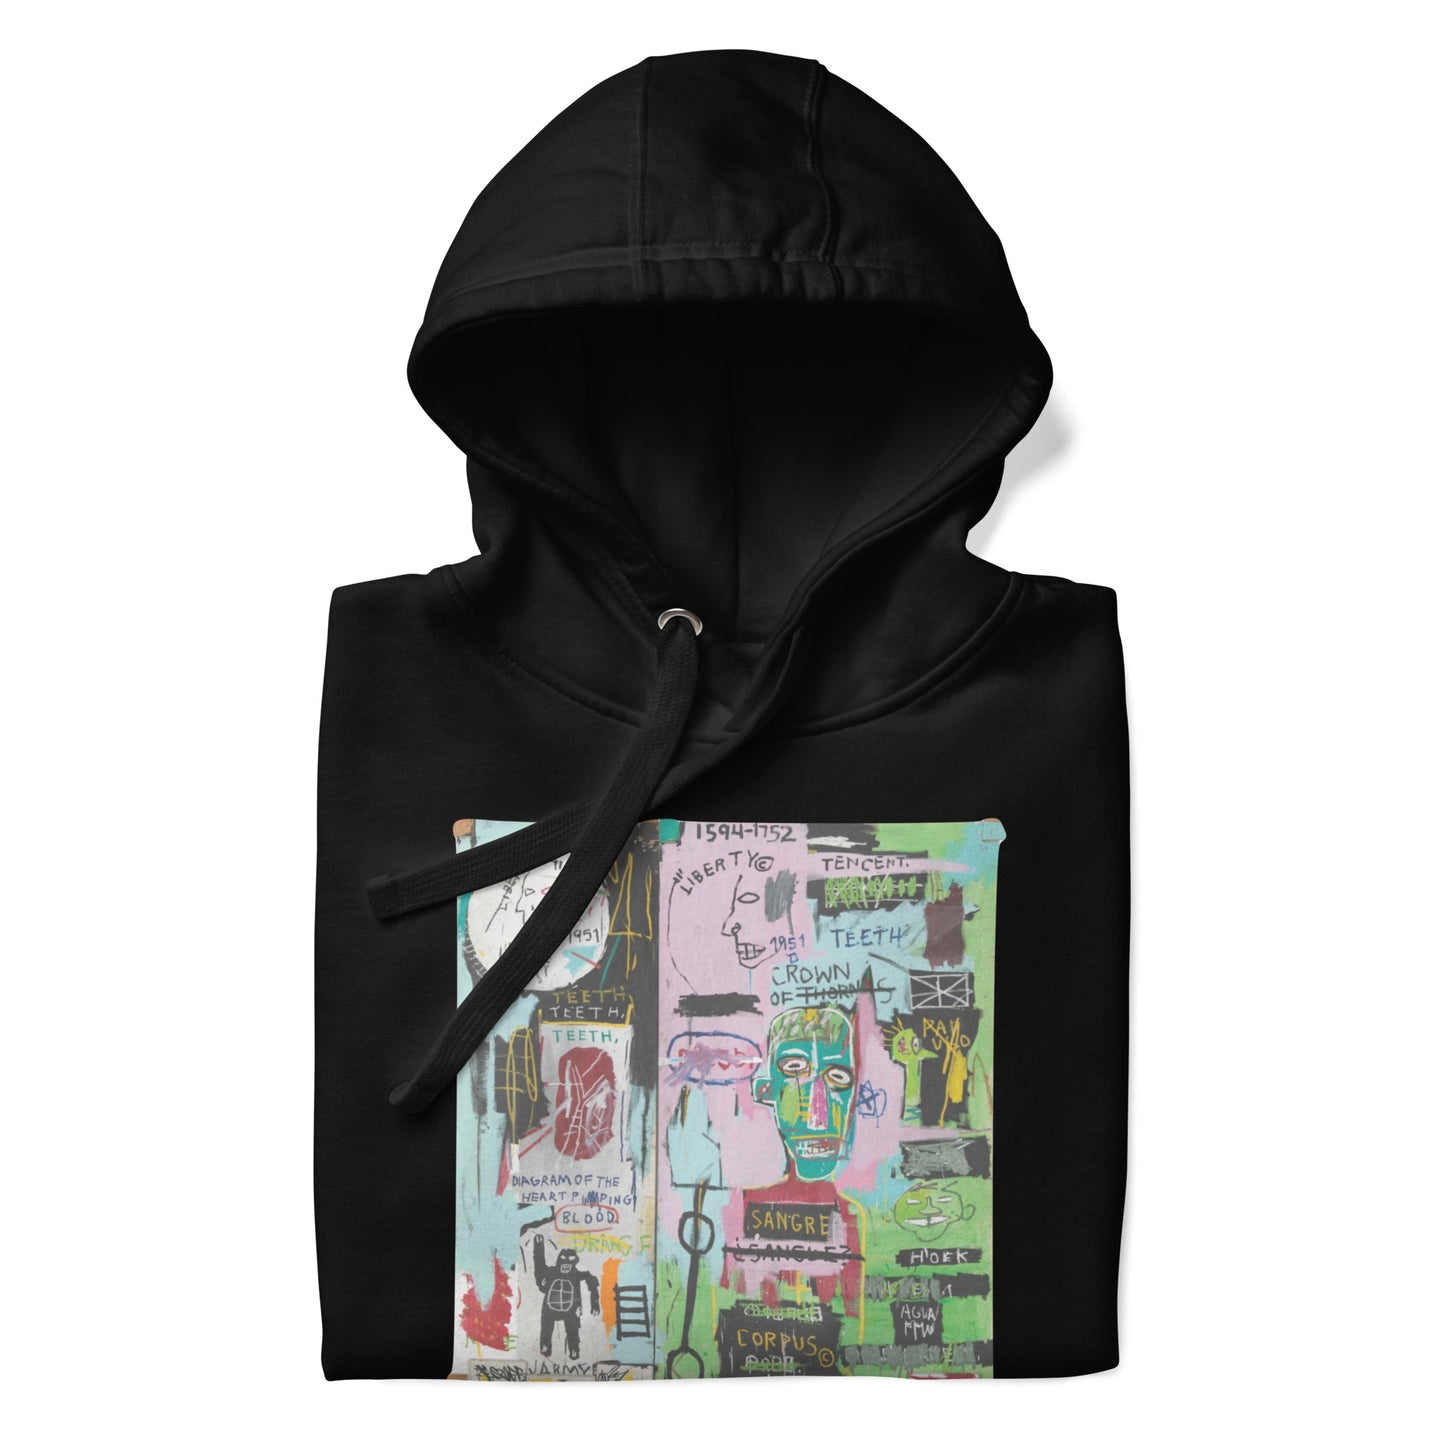 Jean-Michel Basquiat "In Italian" Artwork Printed Premium Streetwear Sweatshirt Hoodie Black